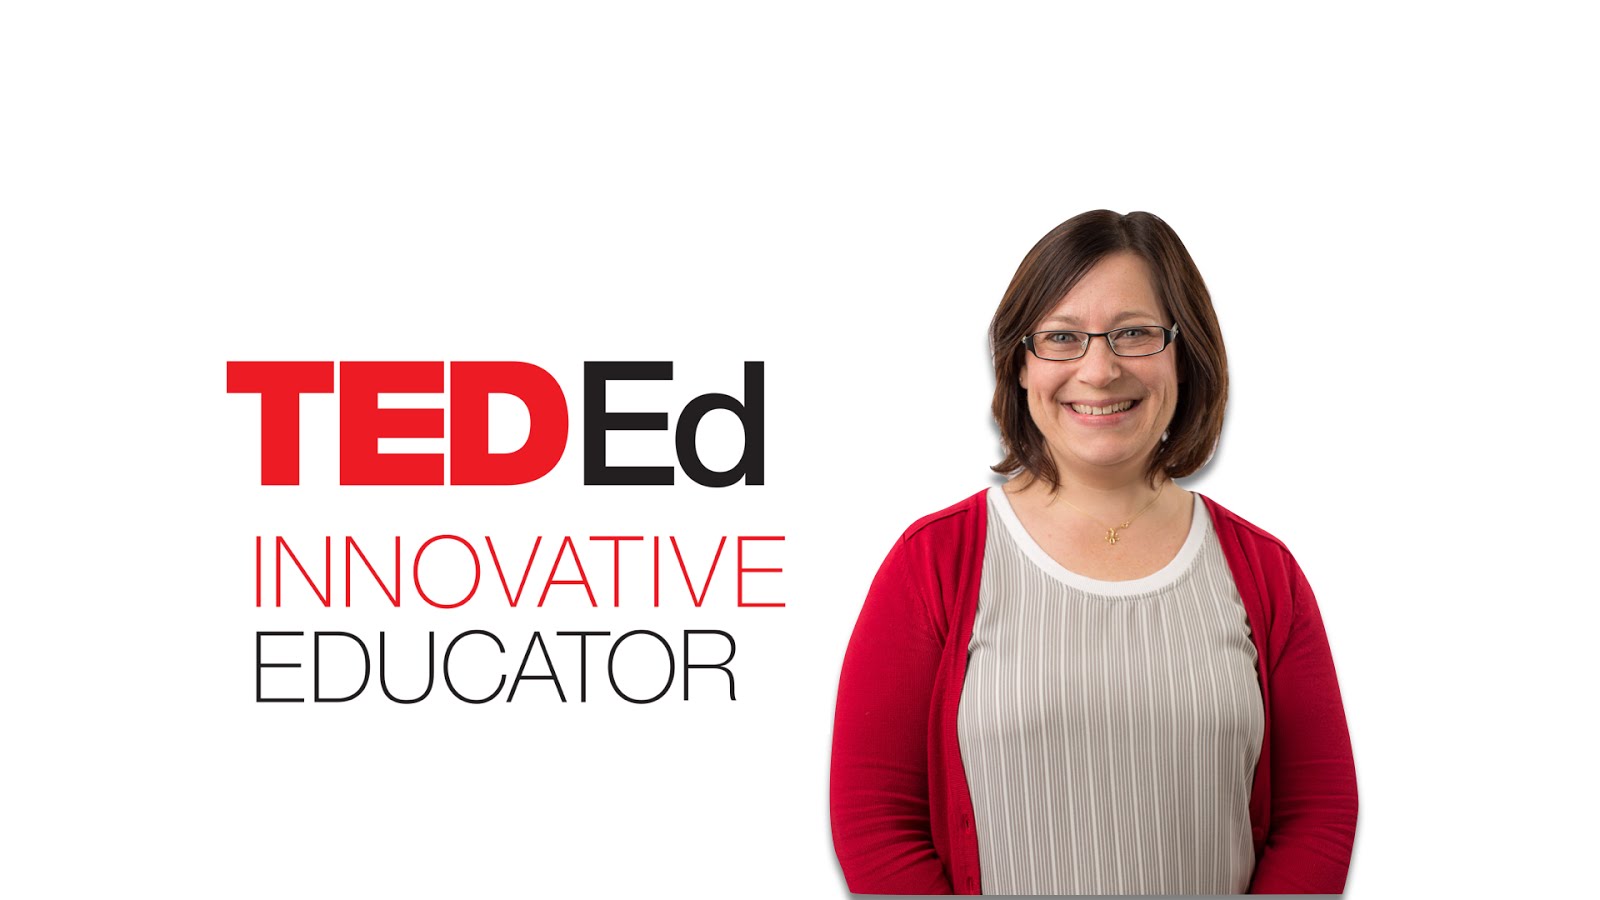 I'm a TED-Ed Innovative Educator